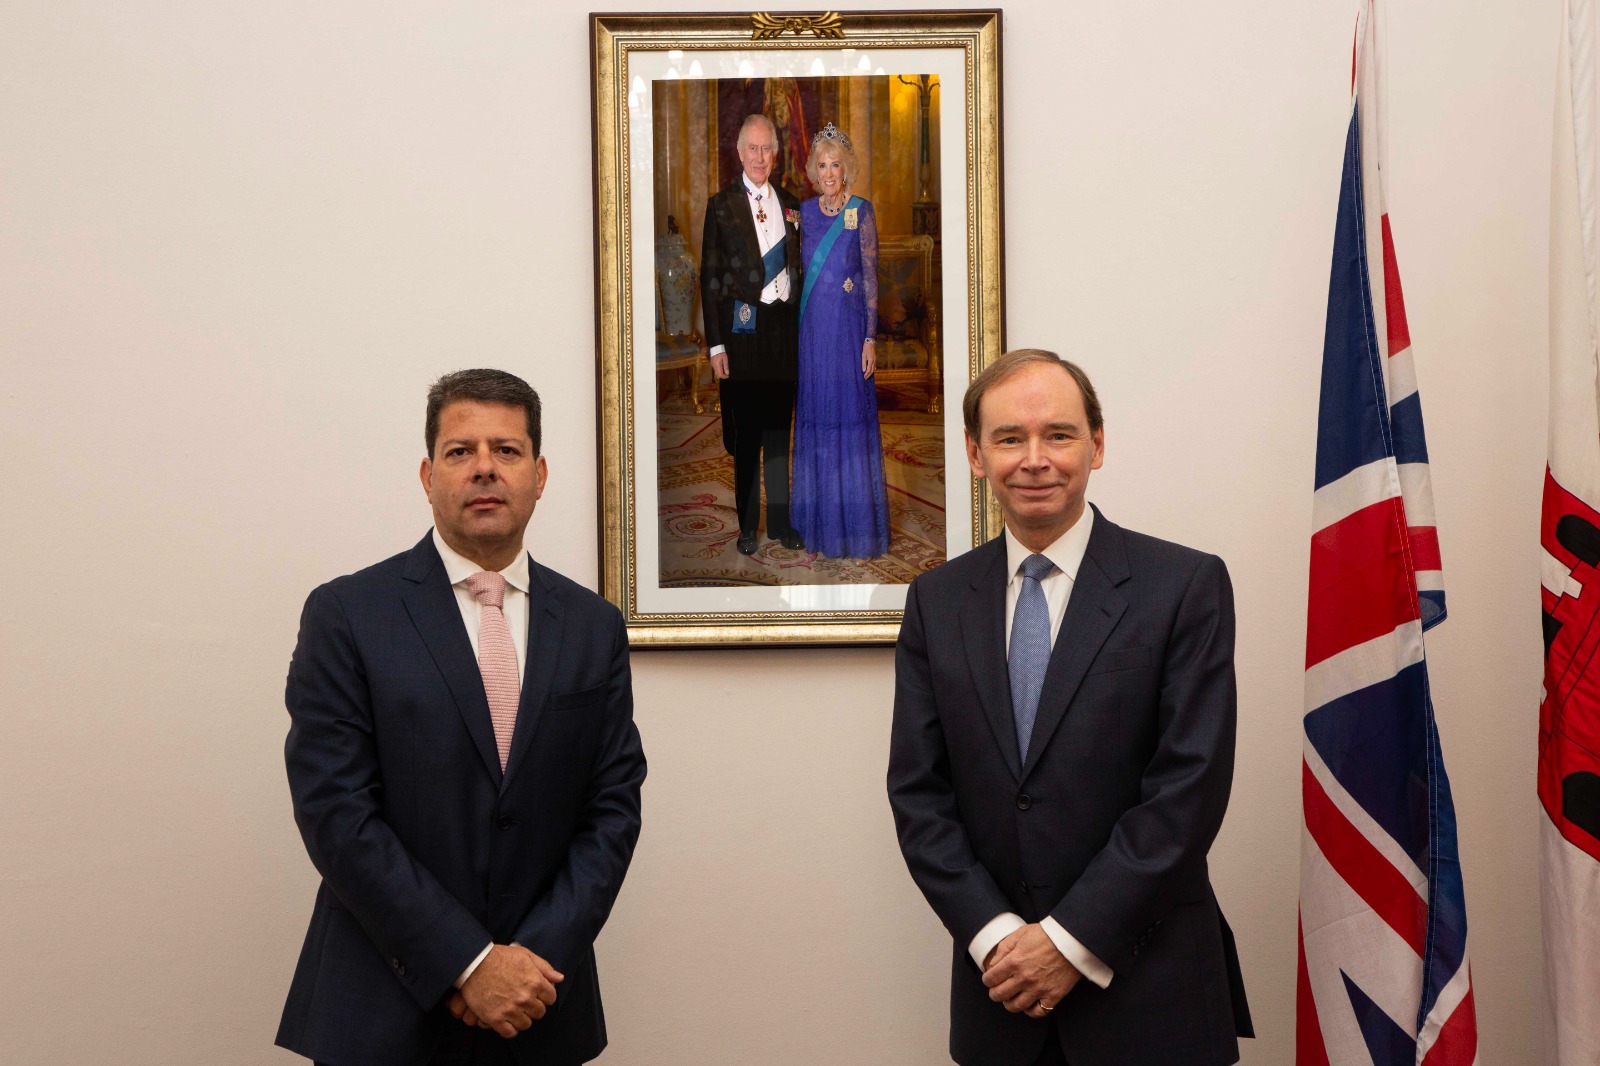 El Ministro Principal, Fabián Picardo, y el Gobernador, Sir David Steel, junto al retrato